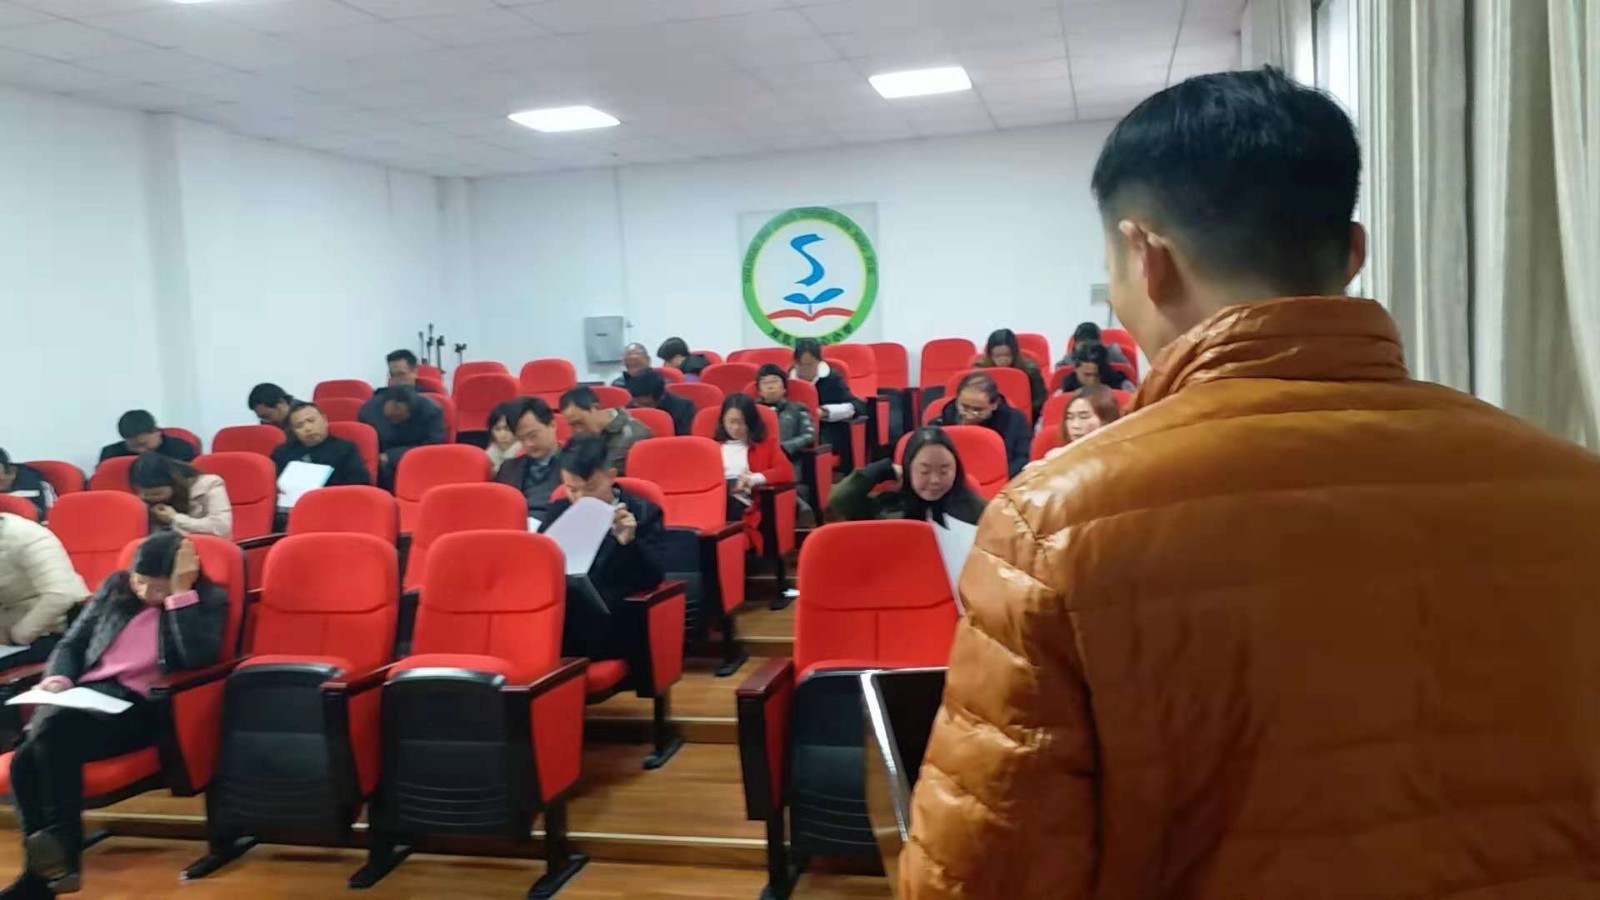 汉阴县双乳镇中心小学:加强说课训练提升教师